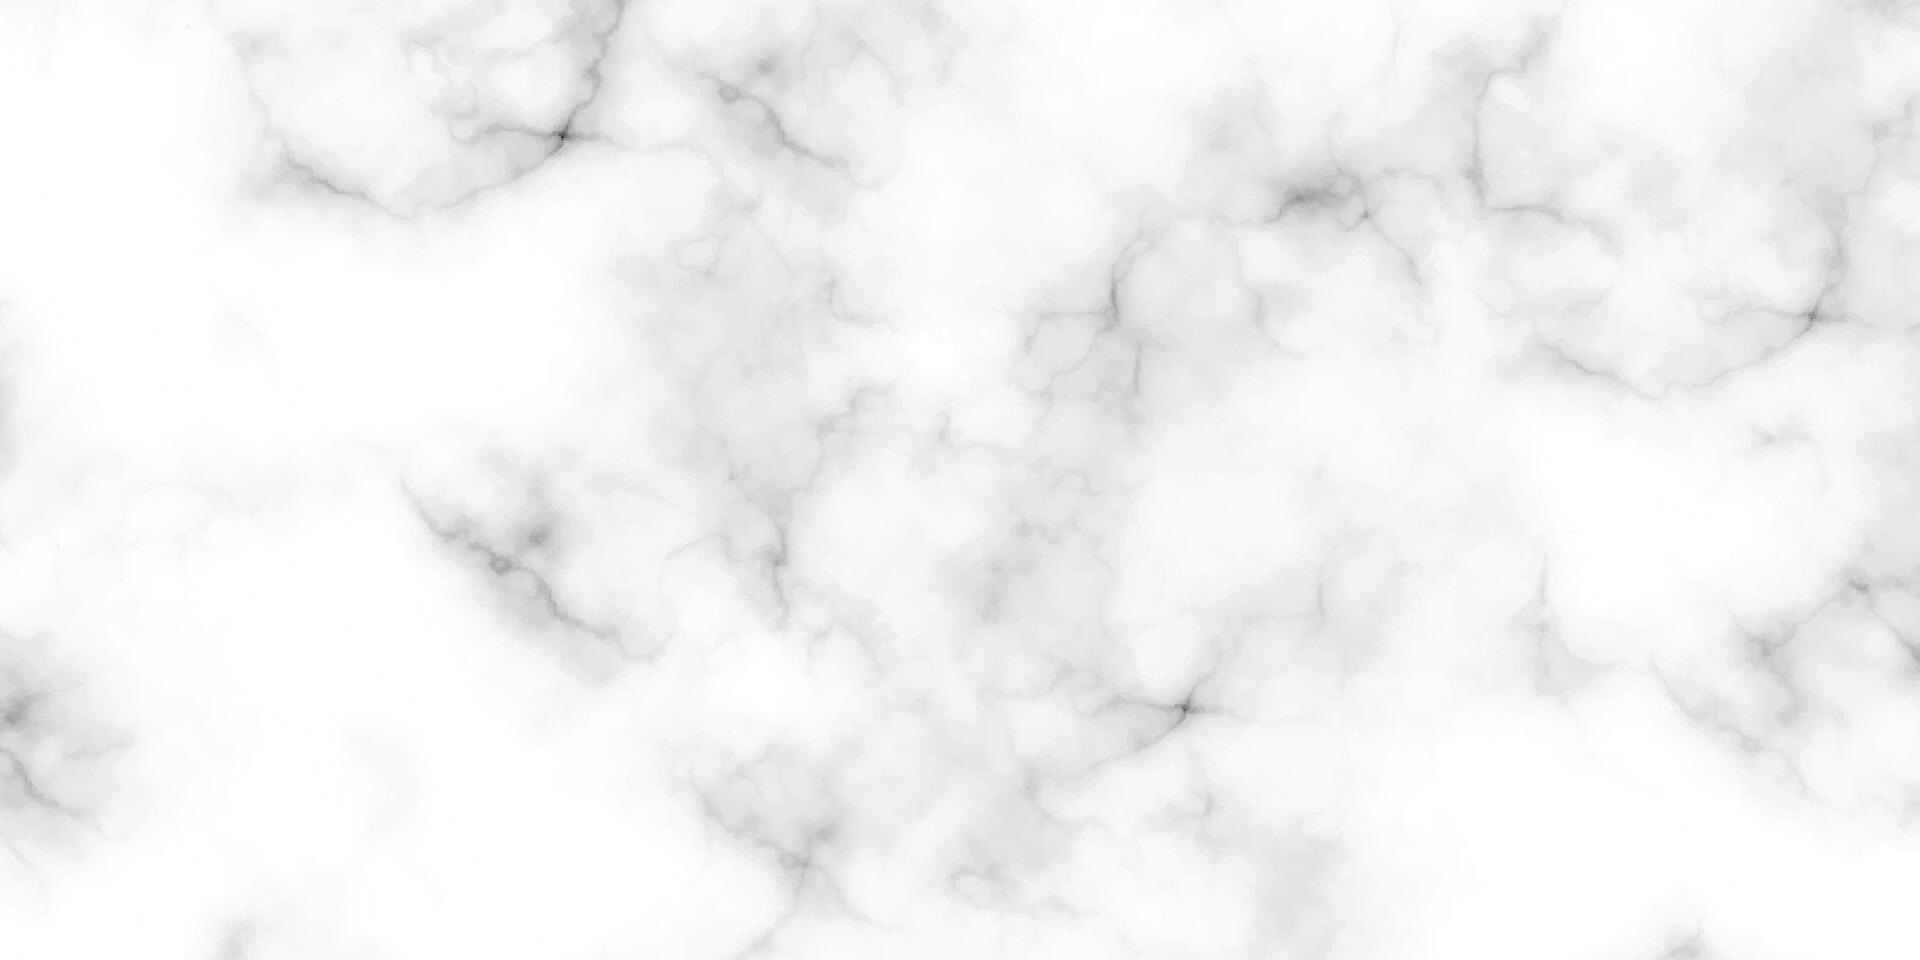 Panorama- Weiß Marmor Stein Textur. Weiß Marmor Textur Hintergrund. hohe Auflösung Weiß carrara Marmor Stein Textur. vektor